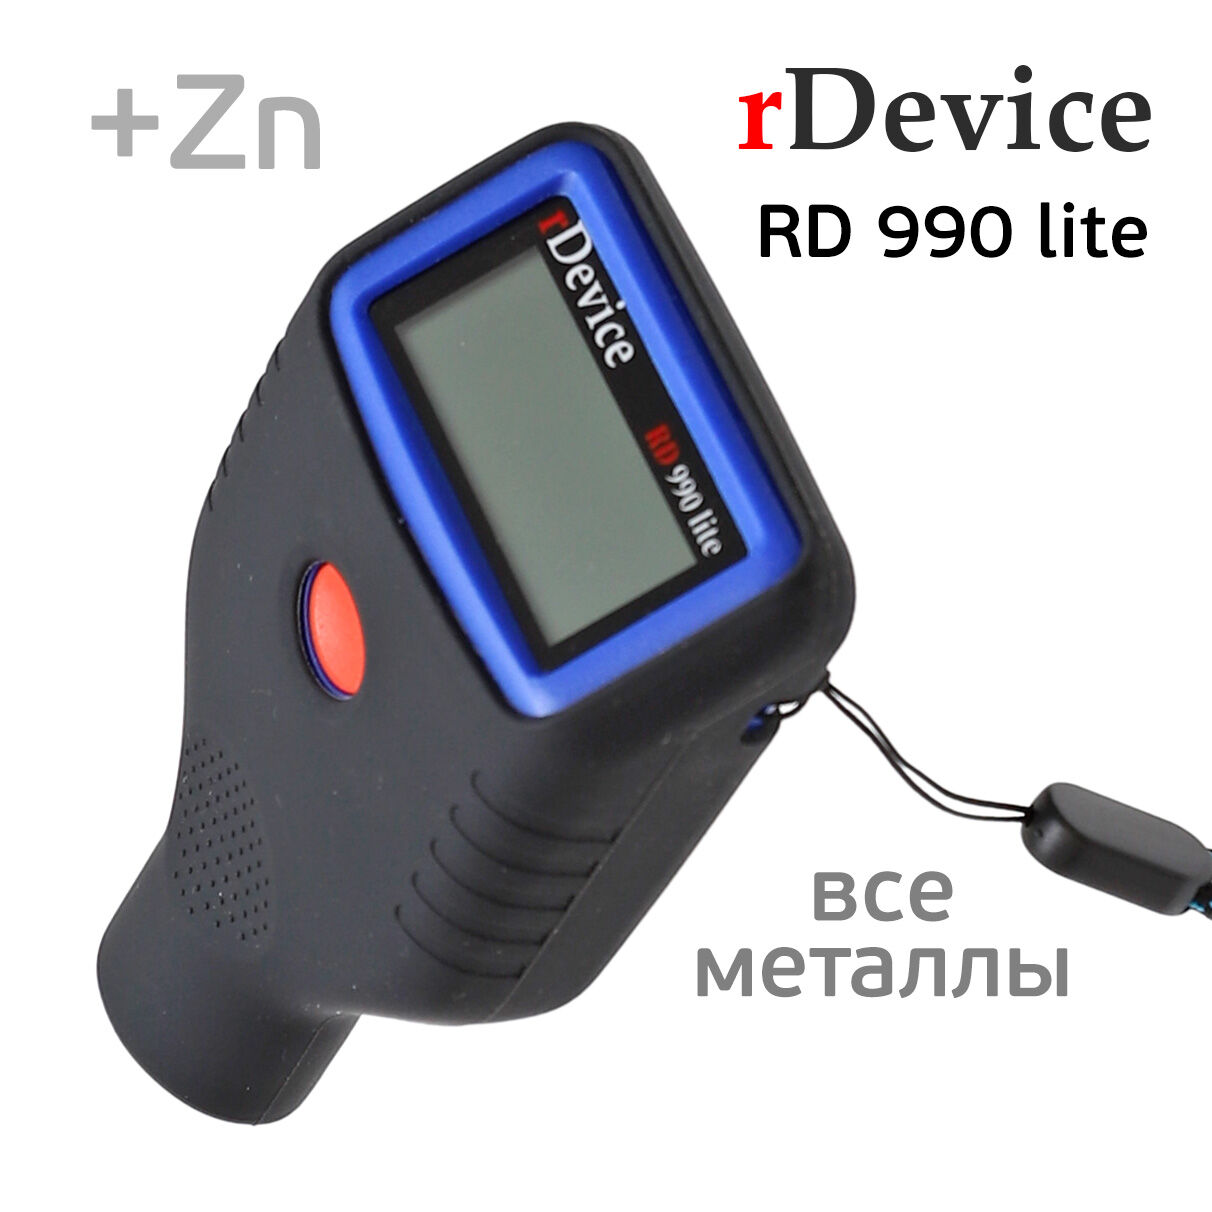 Толщиномер rDevice RD-990 Lite (max 2мм; цинк; чехол; все металлы)